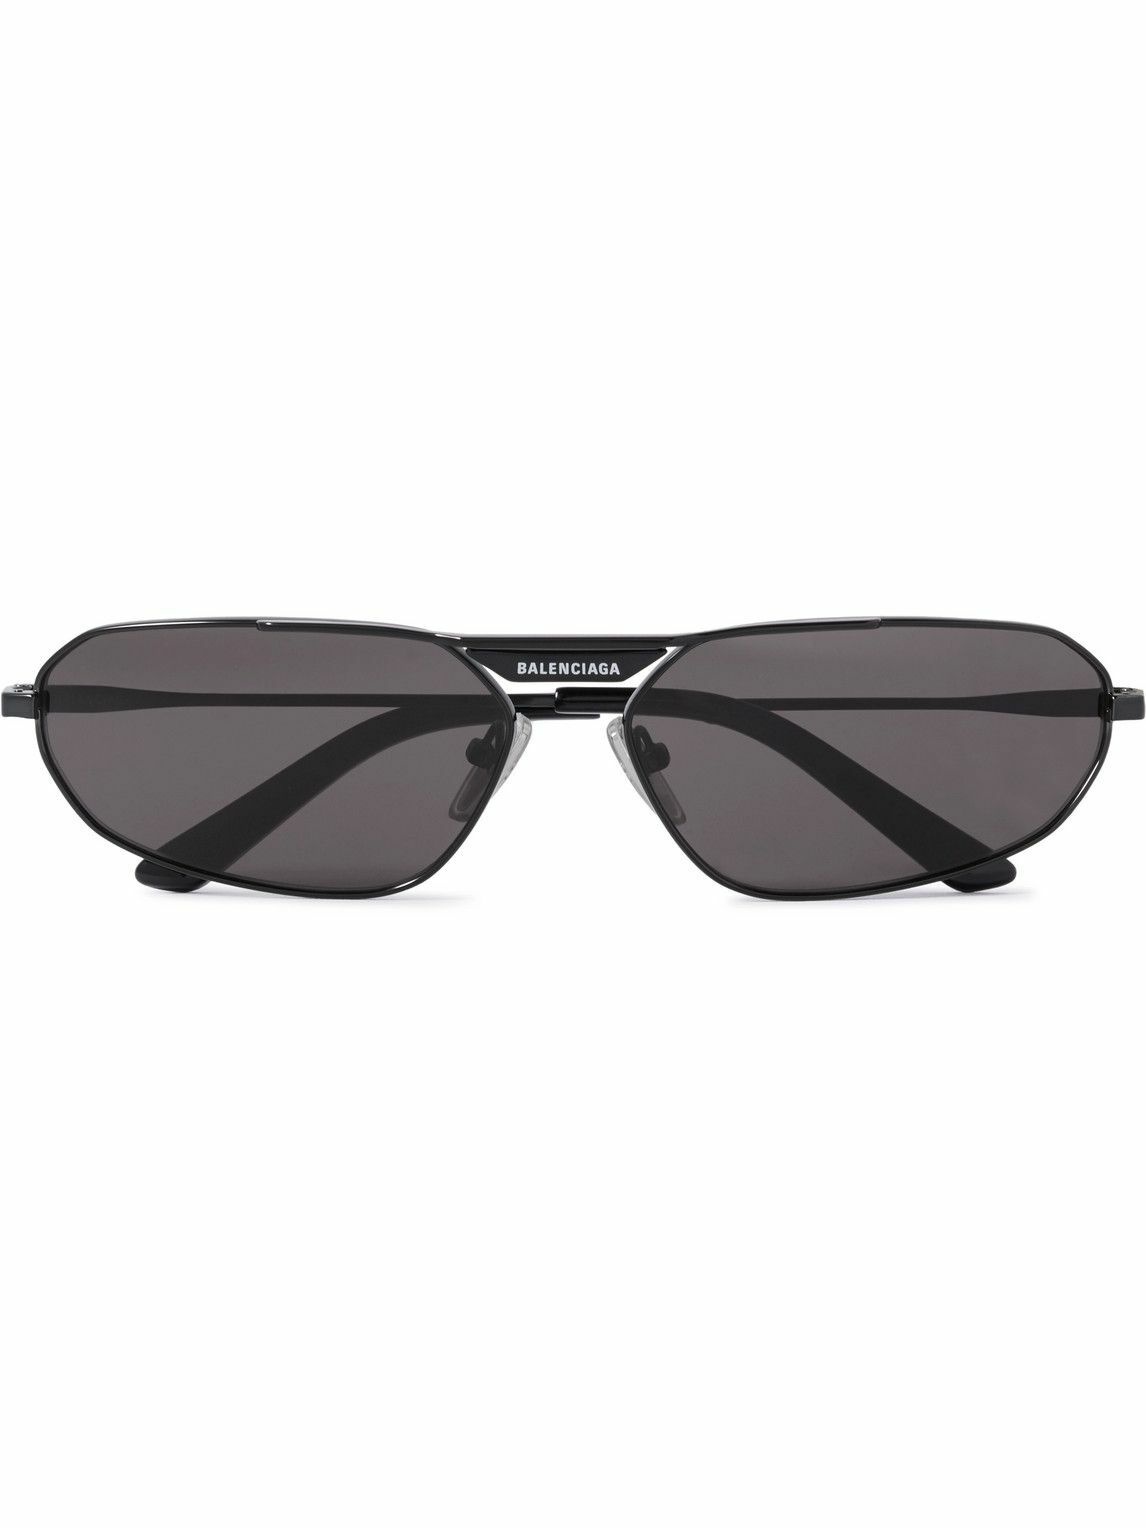 Balenciaga - Oval-Frame Metal Sunglasses Balenciaga